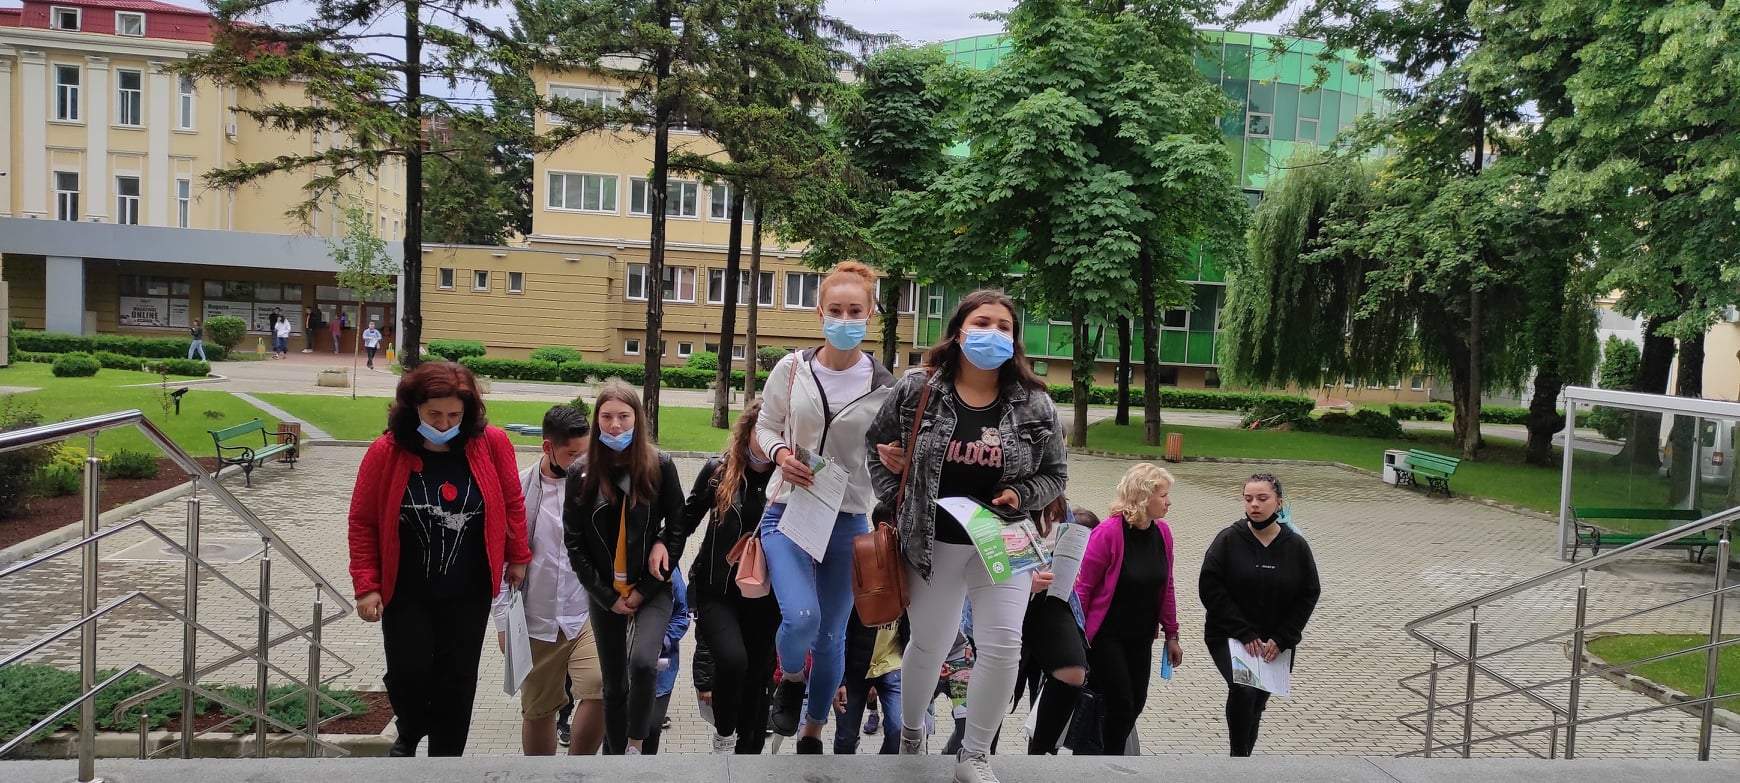 Tinerii se pot caza în căminele studențești doar cu dovada vaccinării. Anunțul făcut de Universitatea Babeș-Bolyai din Cluj